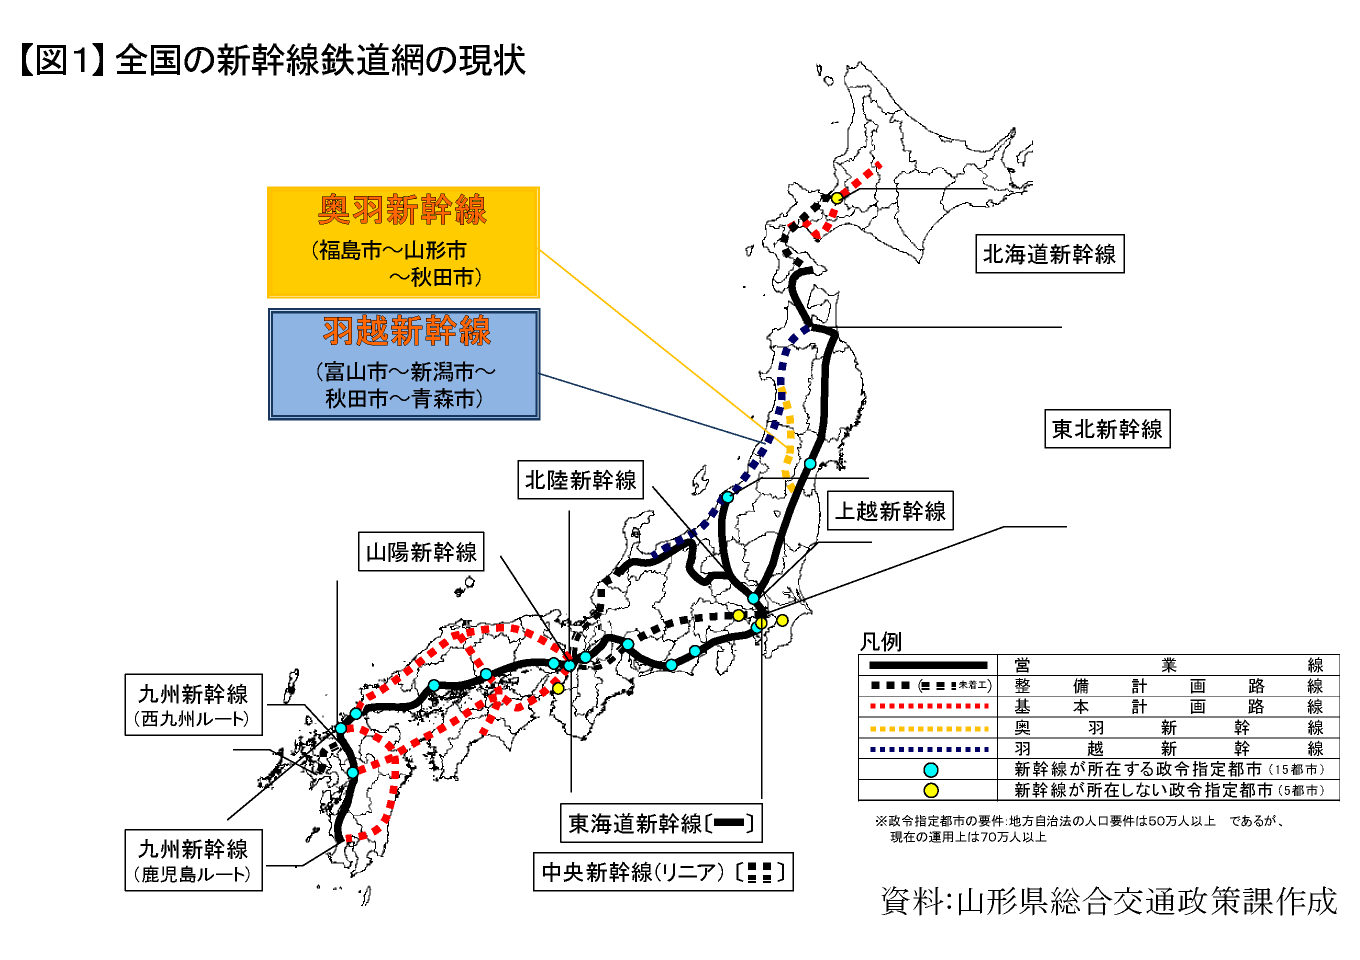 【図1】全国の新幹線鉄道網の現状